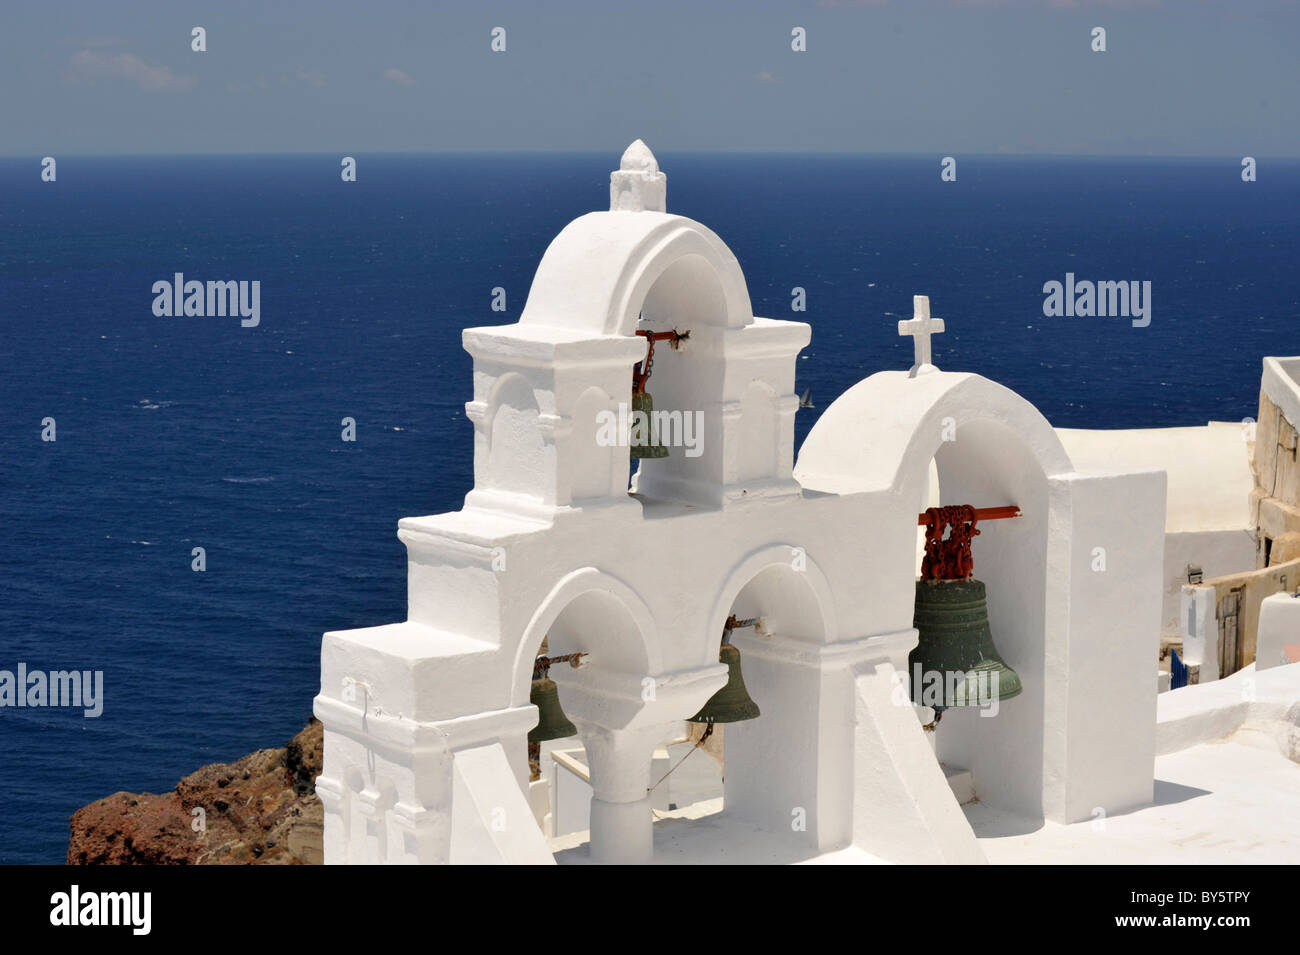 L'église et de clochers sur l'île grecque de Santorin dans la mer Égée Banque D'Images